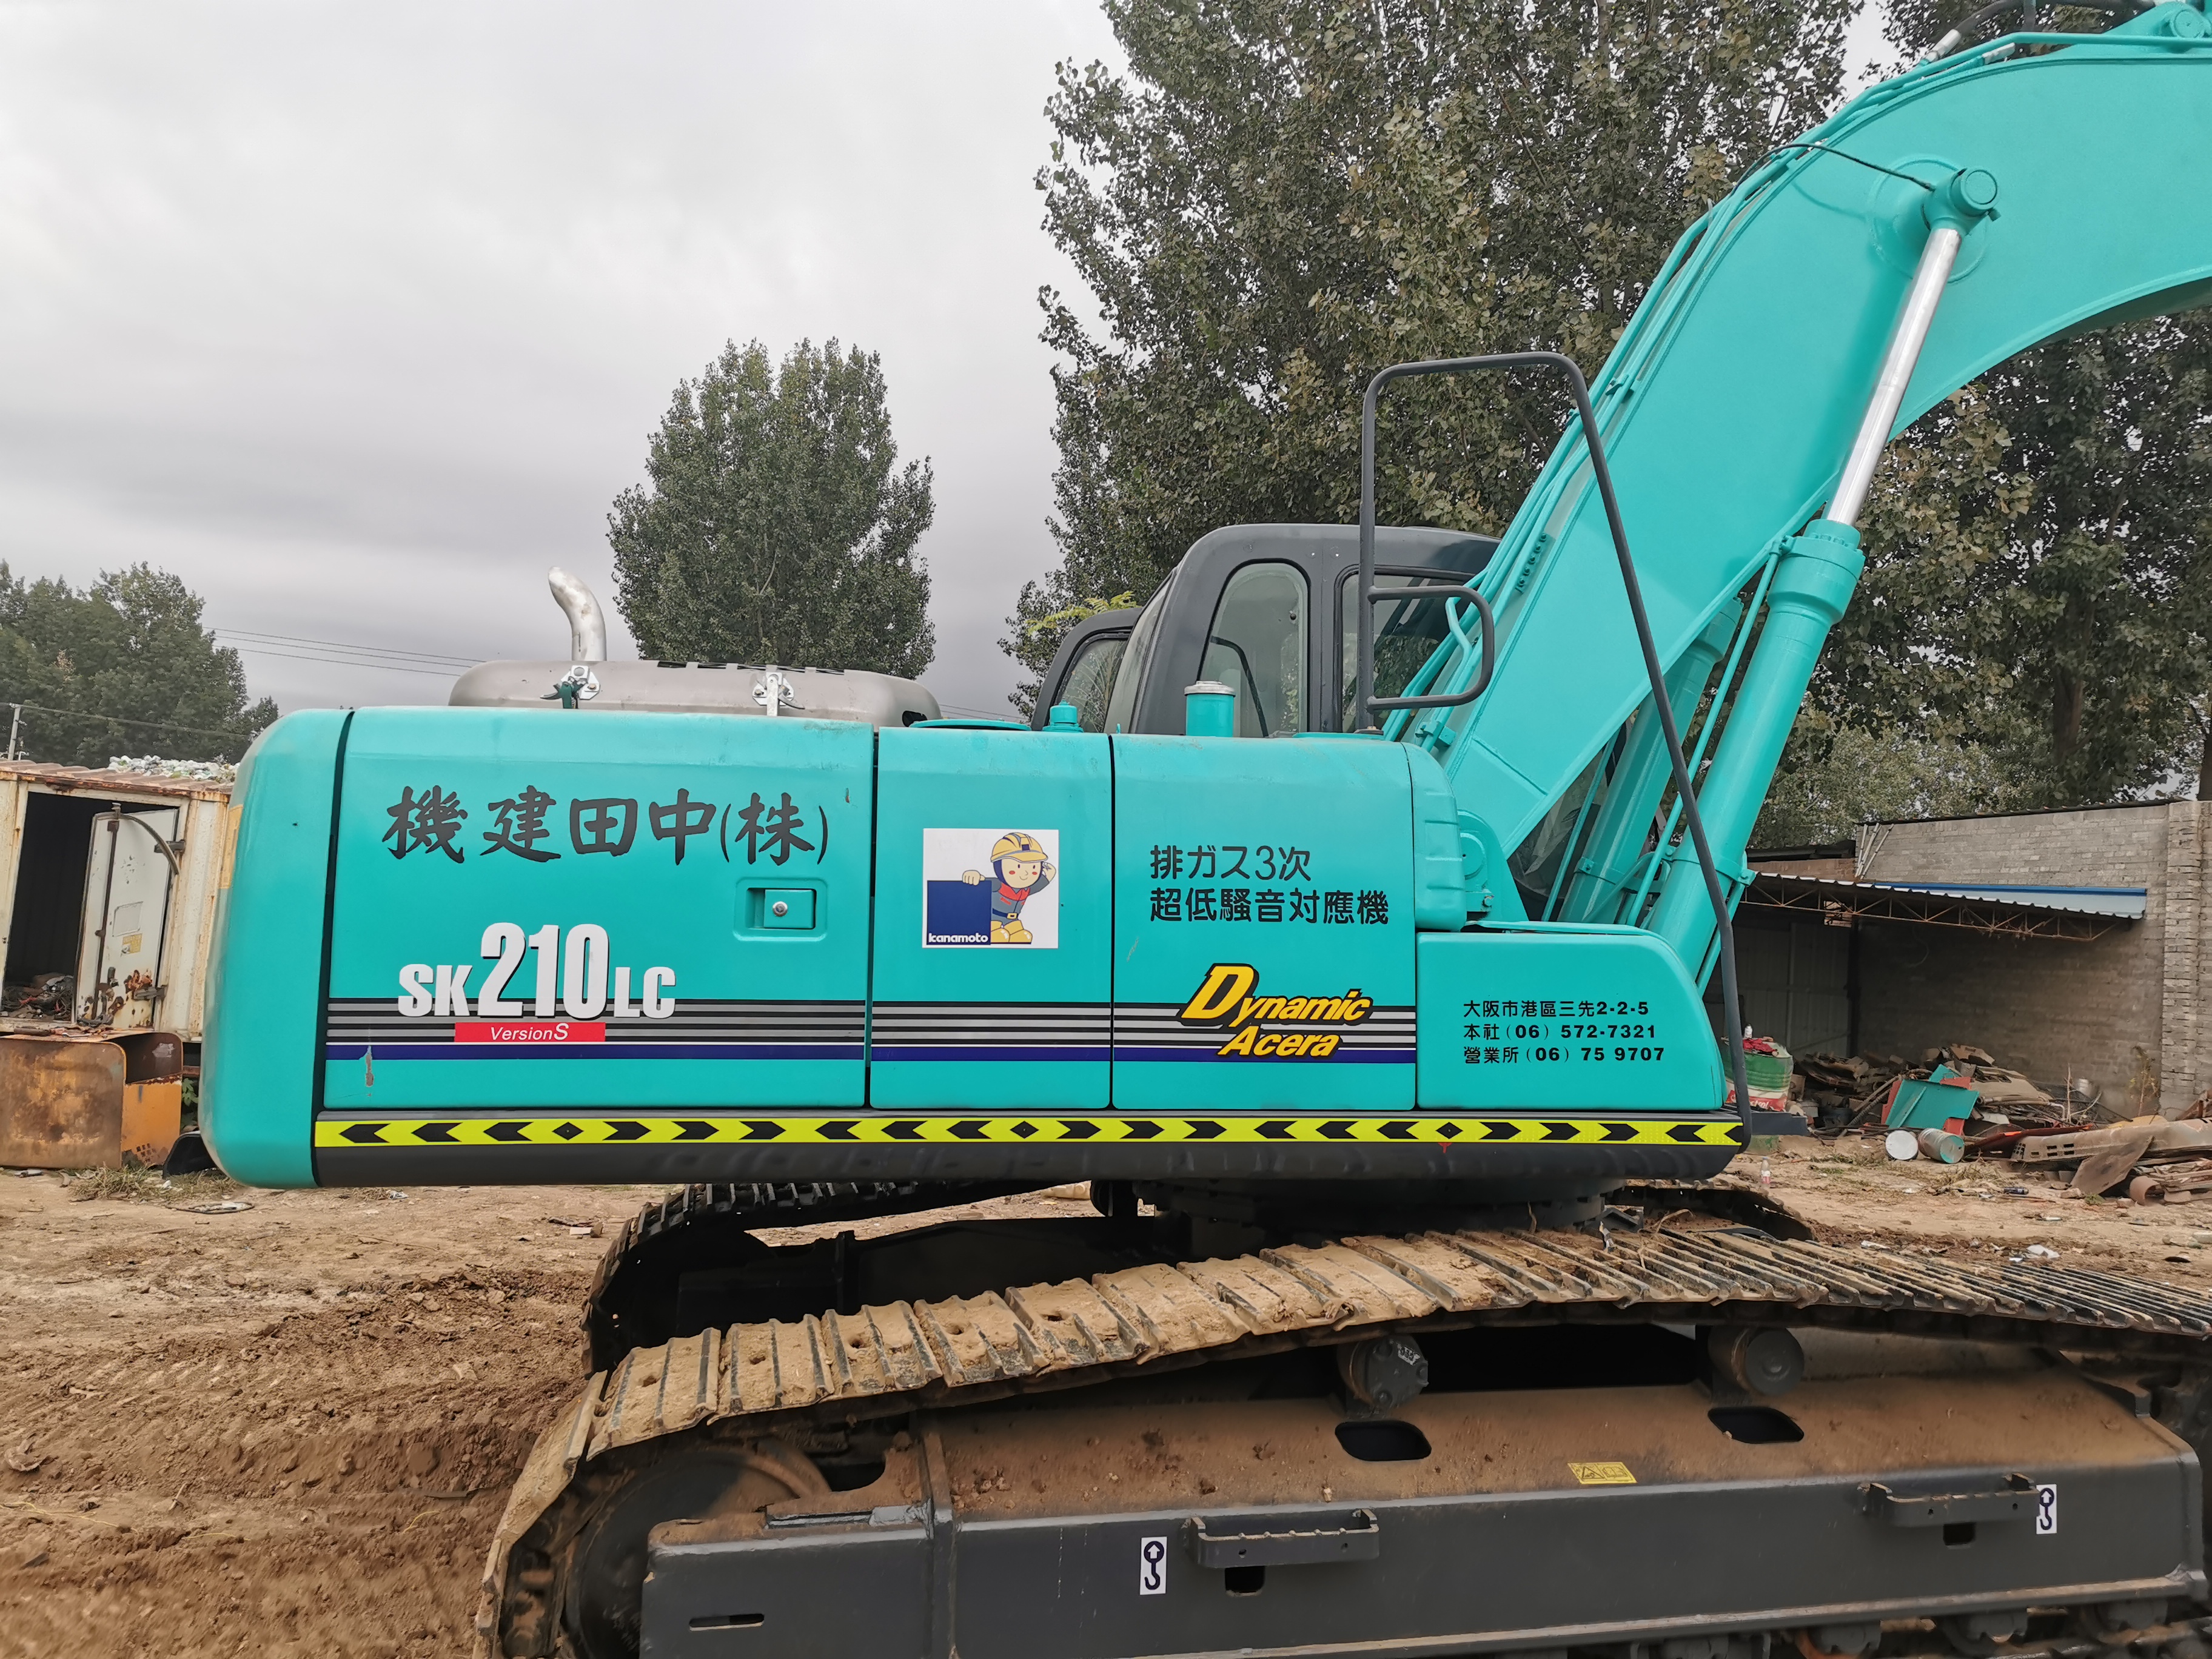 Kobelco SK210-8 Excavator